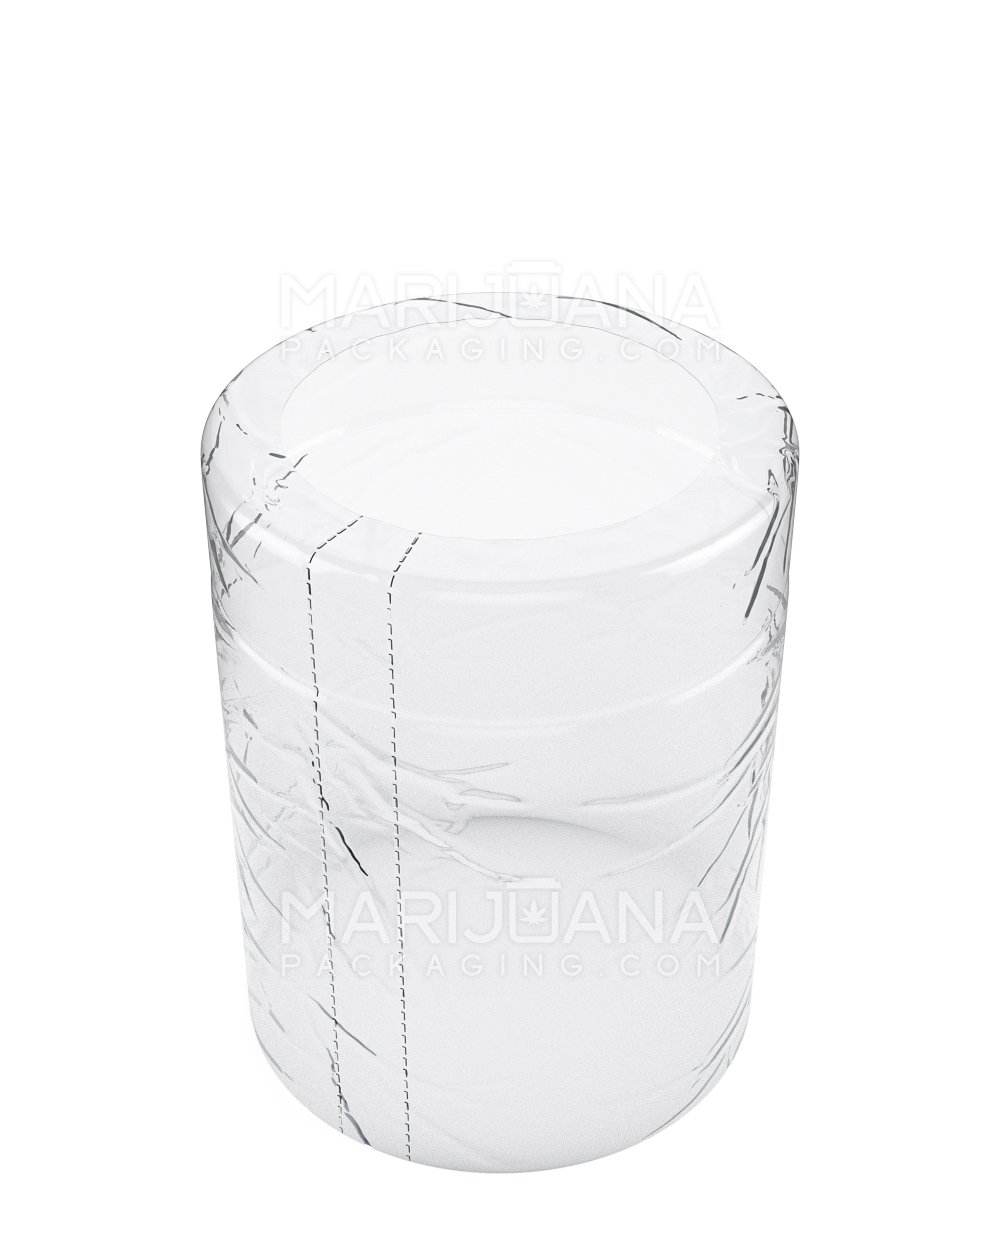 Tamper Evident | Heat Shrink Bands for Jars | 18oz - Clear Plastic - 1000 Count - 1